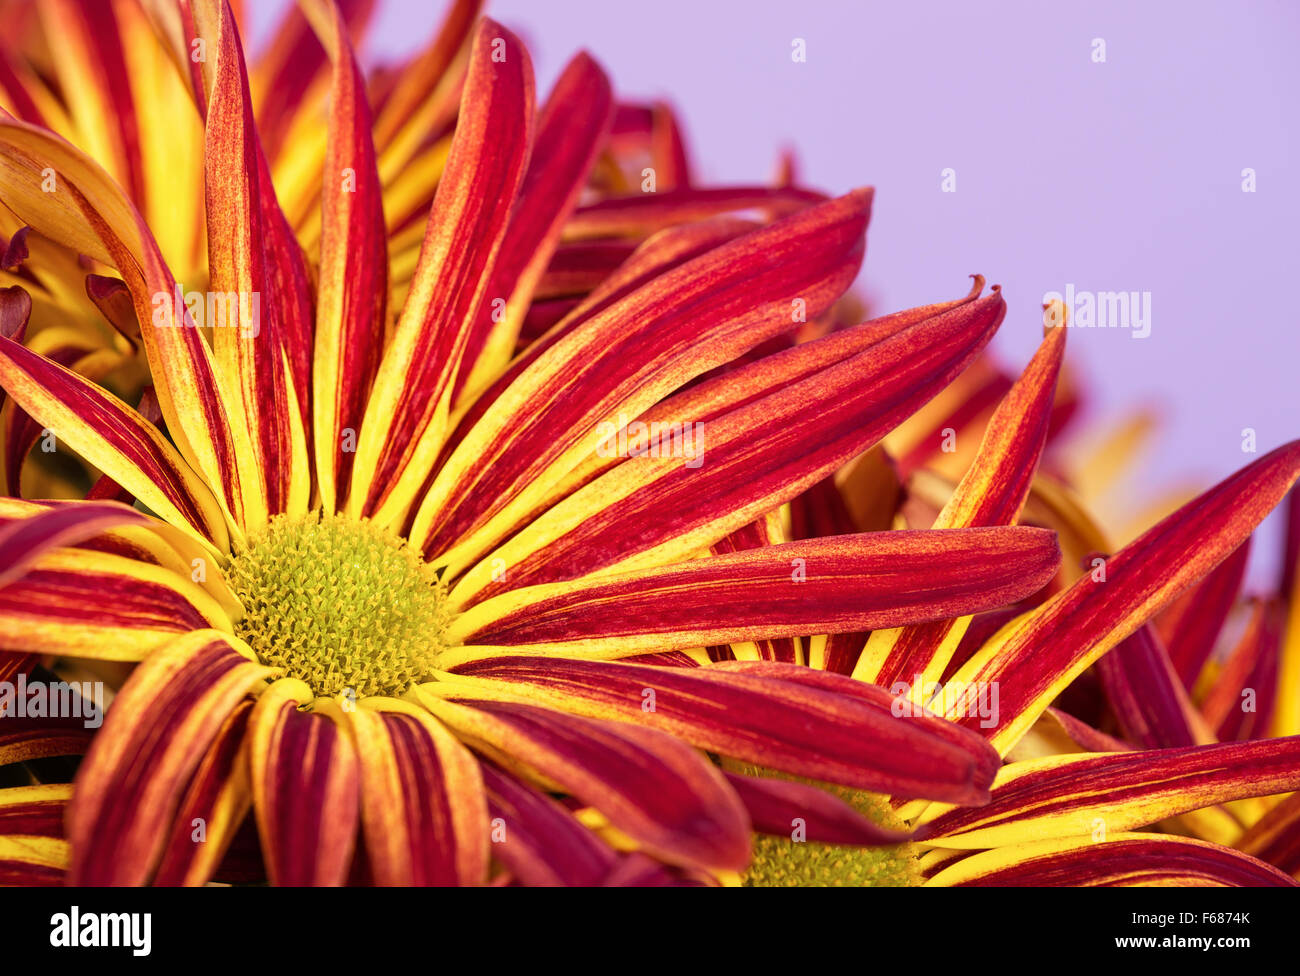 Leuchtend rote gelbe Mama oder Chrysantheme Blumen closeup Stockfoto